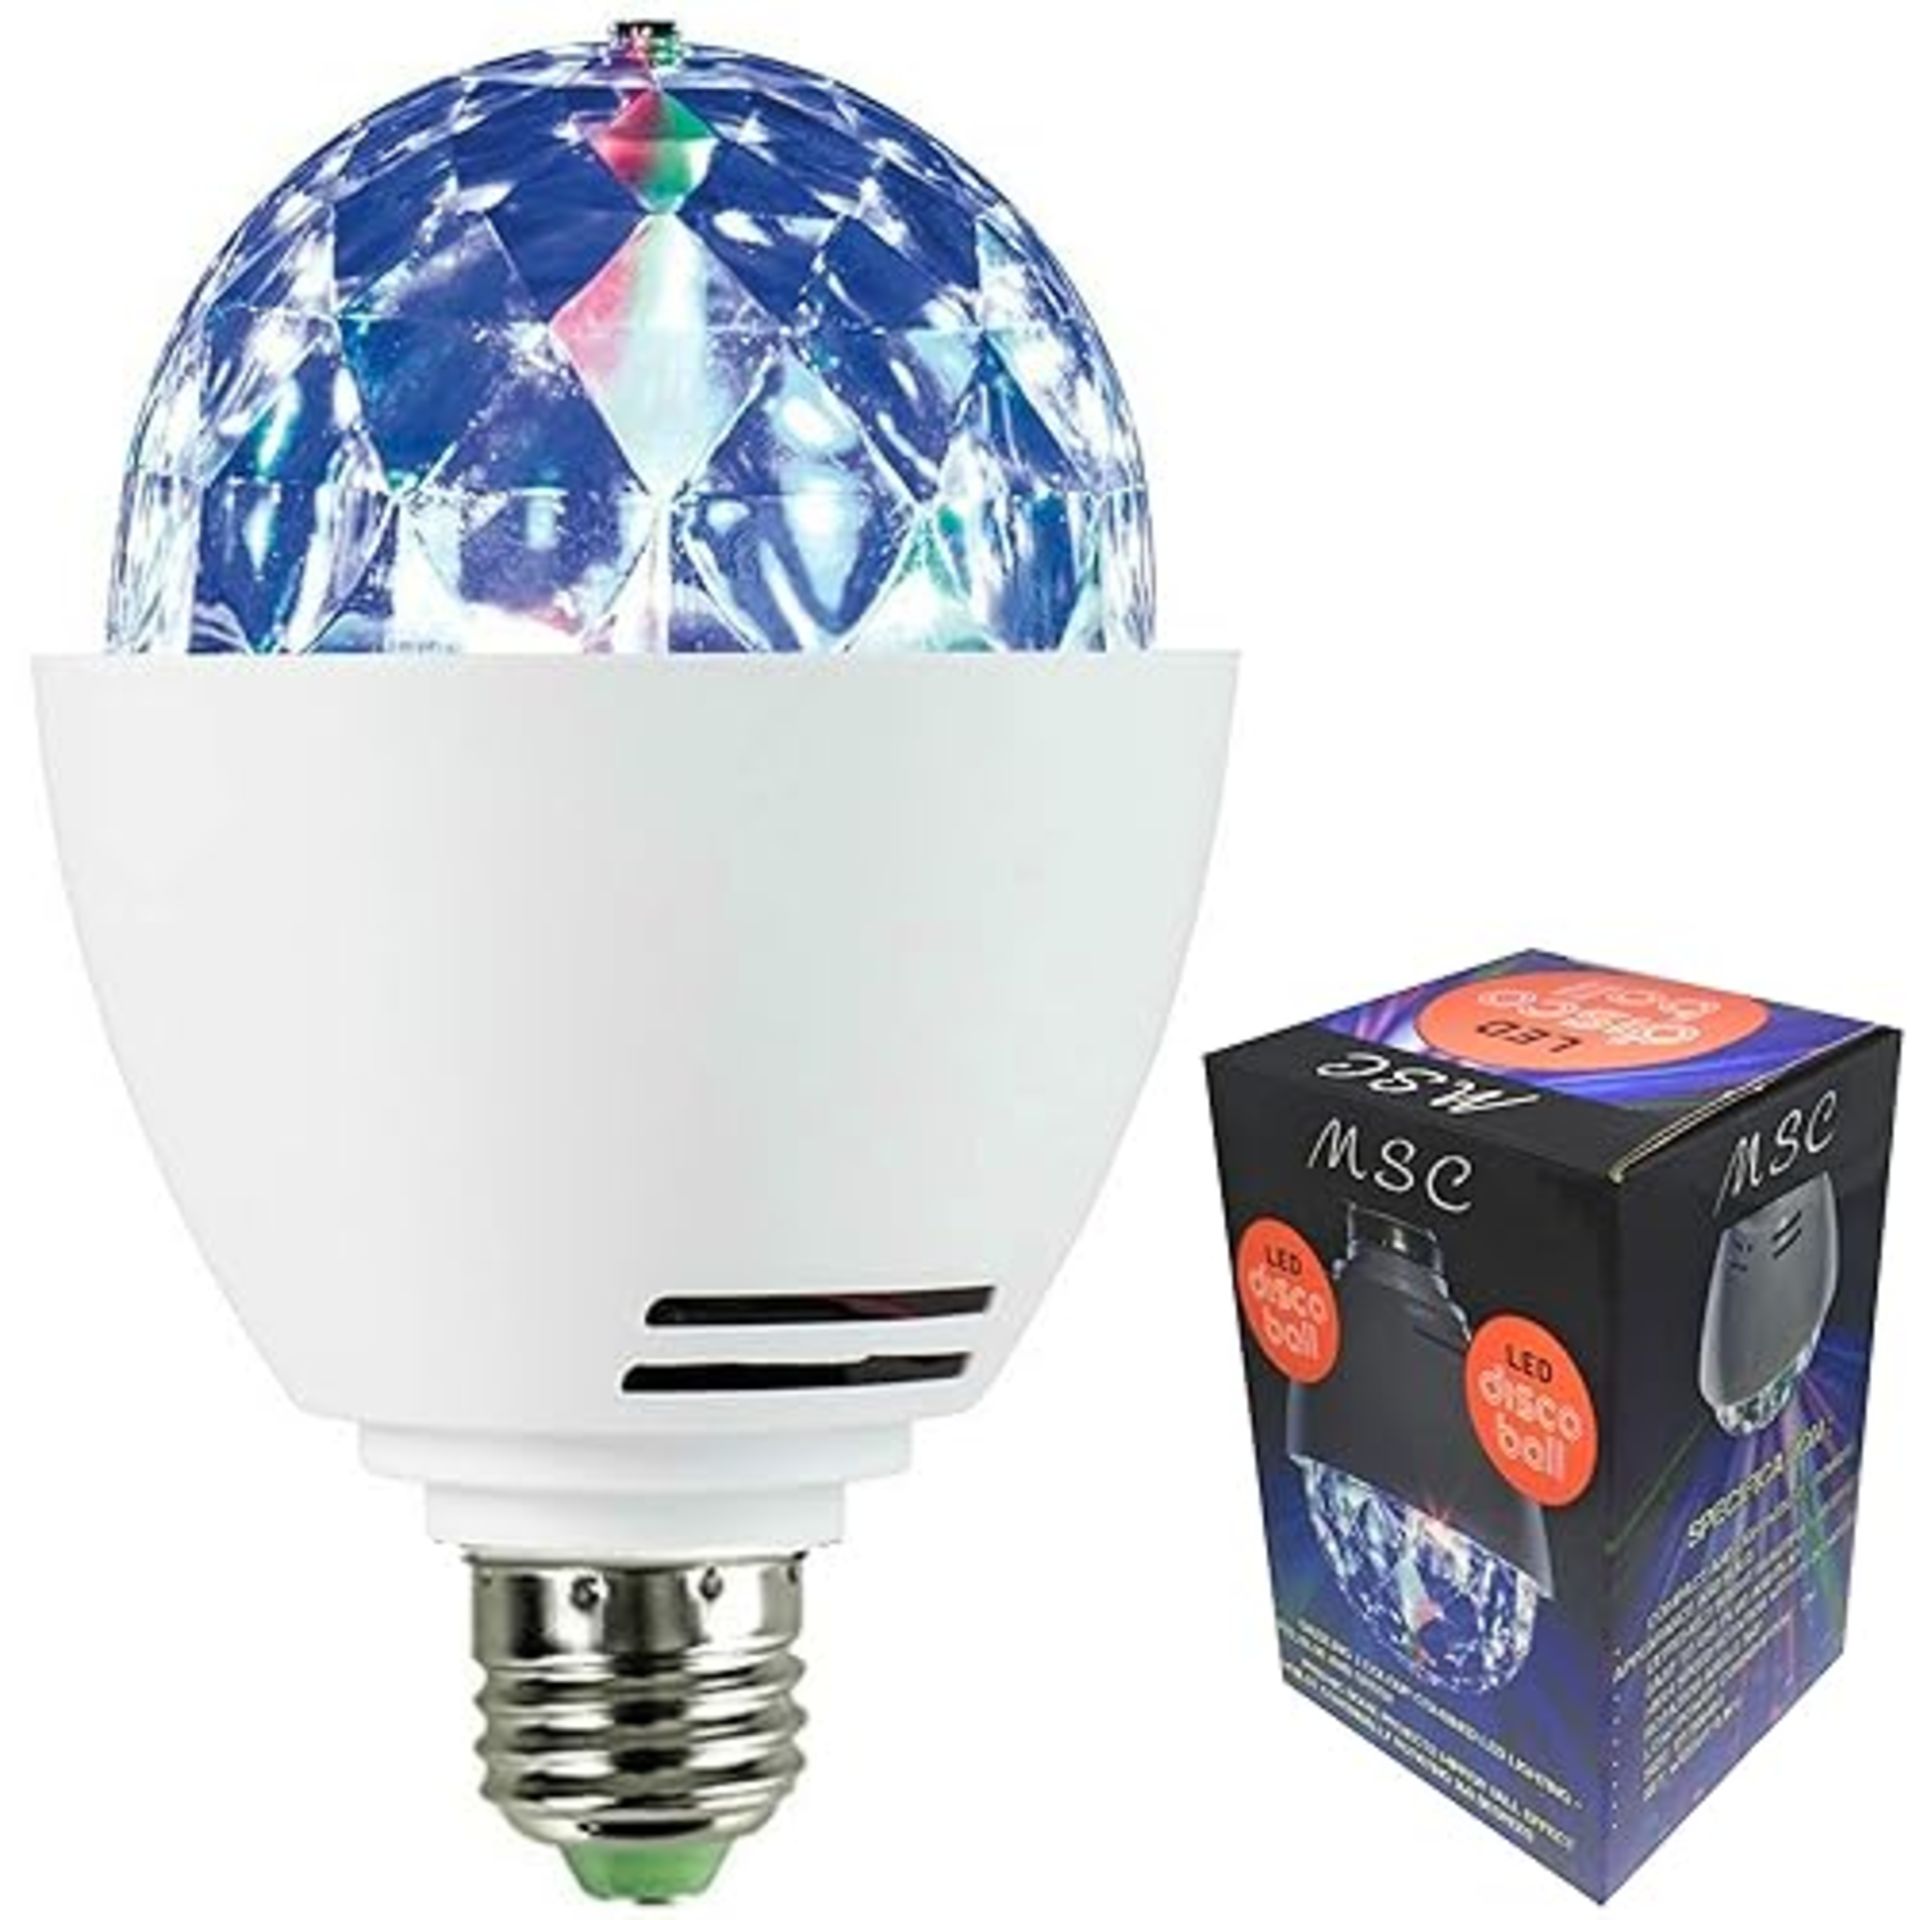 MSC LED E27 - Disco Ball Light Rotating Multi-Coloured Lightbulb Edison Screw Fitting E27